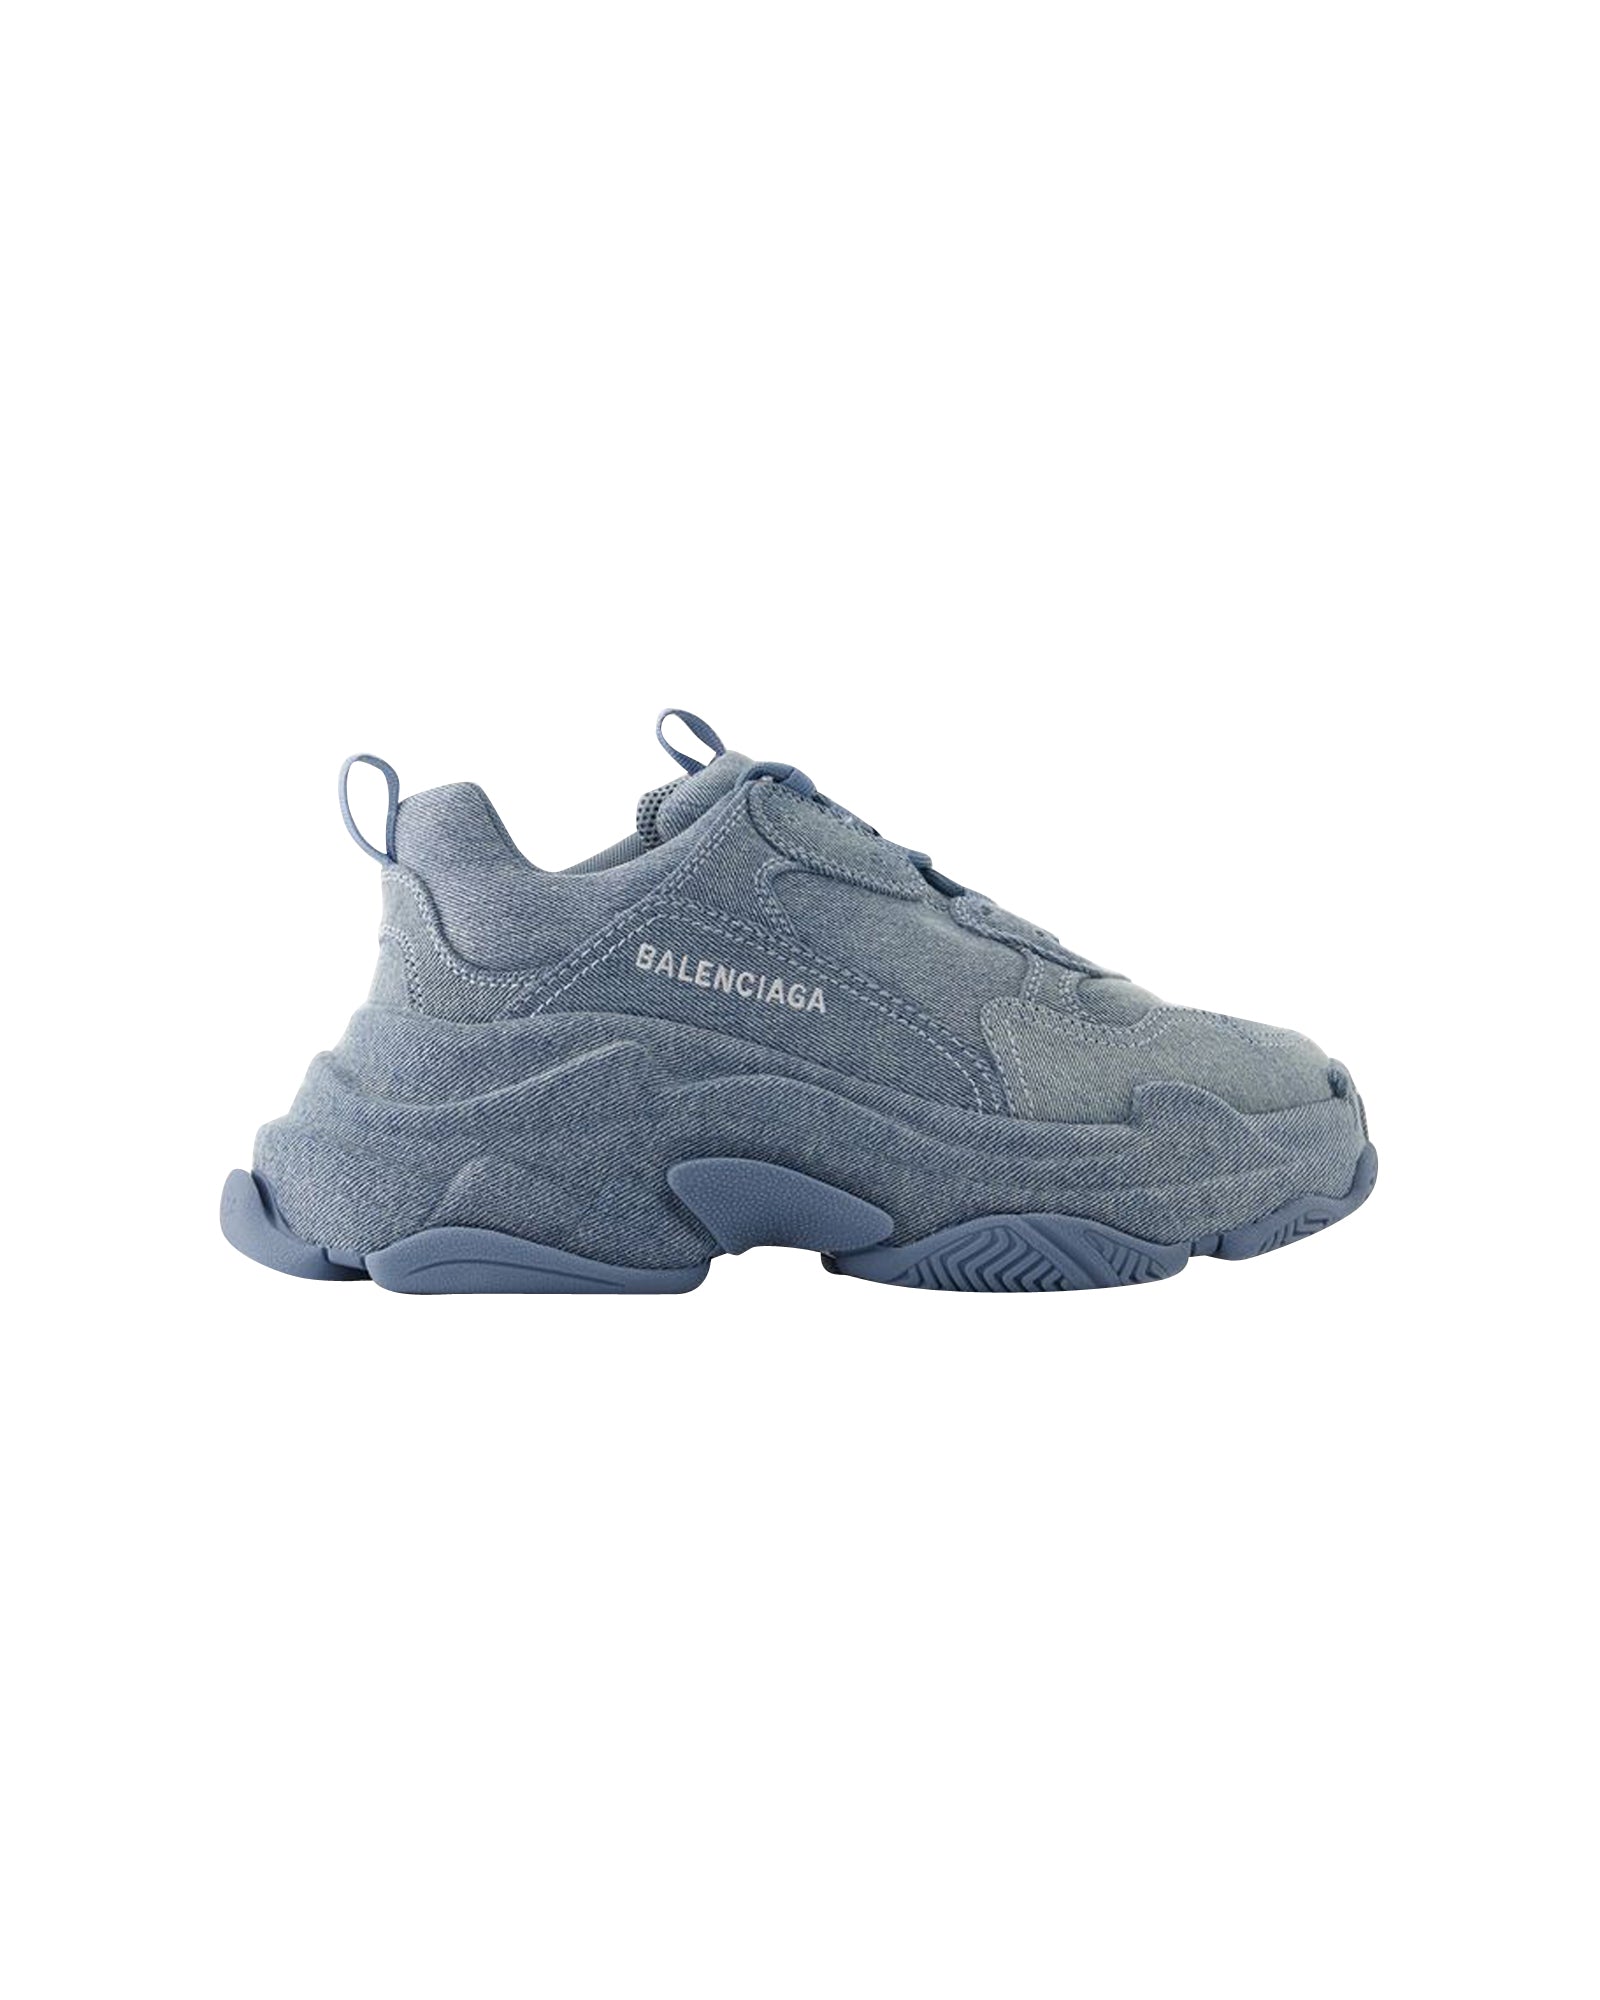 BALENCIAGA TRIPLE S Sneakers - Balenciaga - Denim - Blue